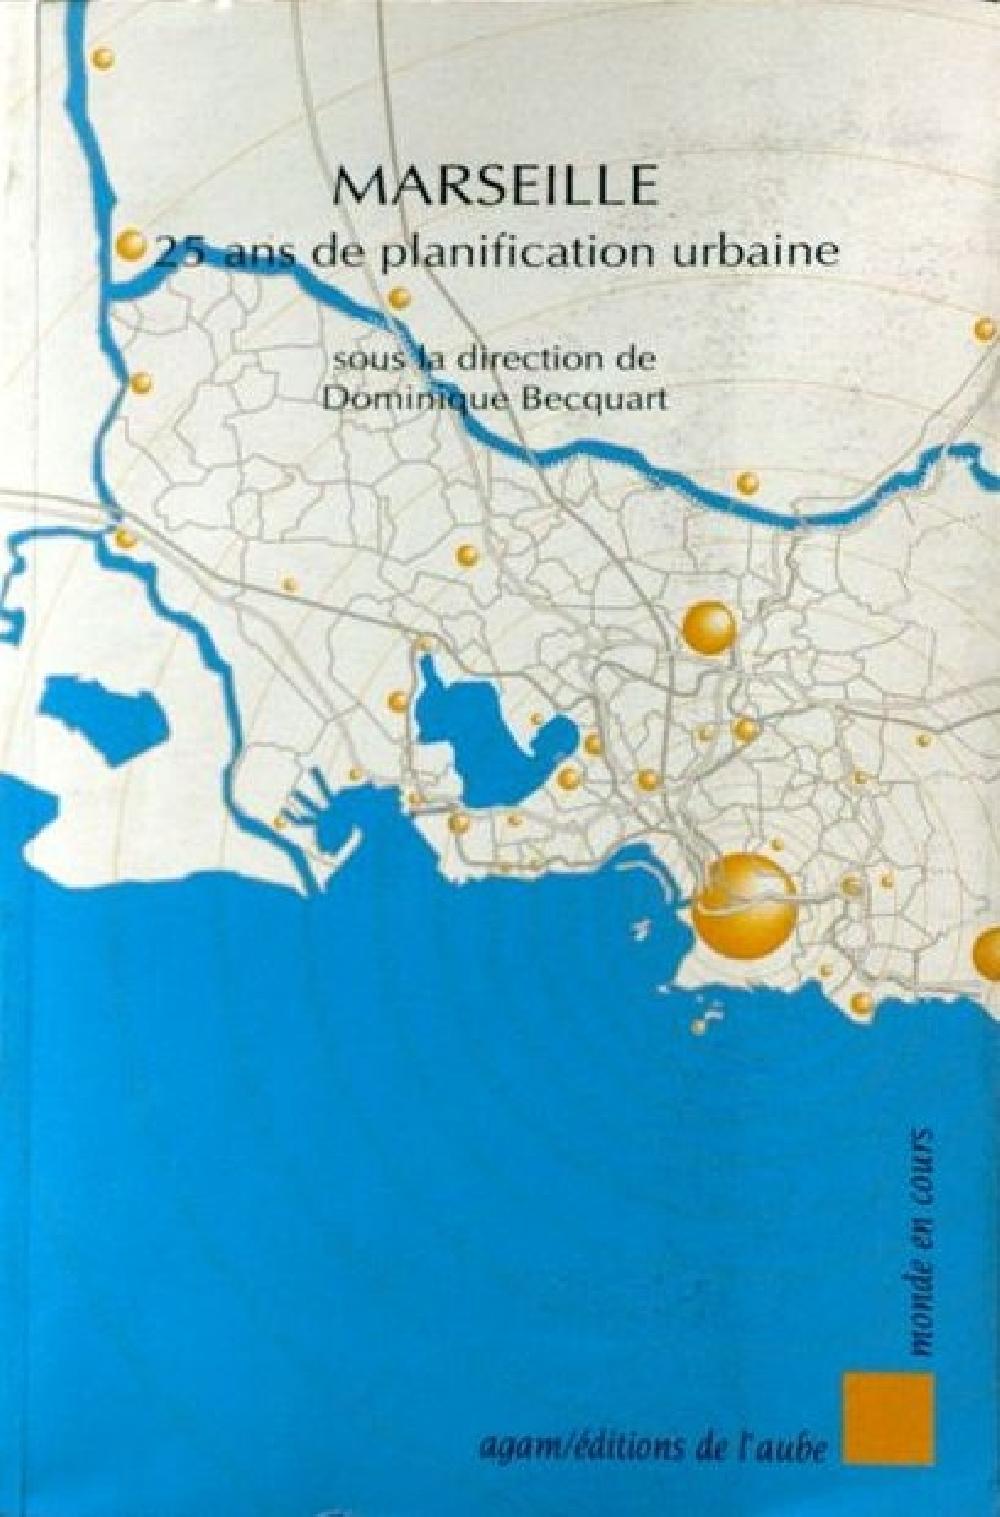 Marseille 25 ans de planification urbaine